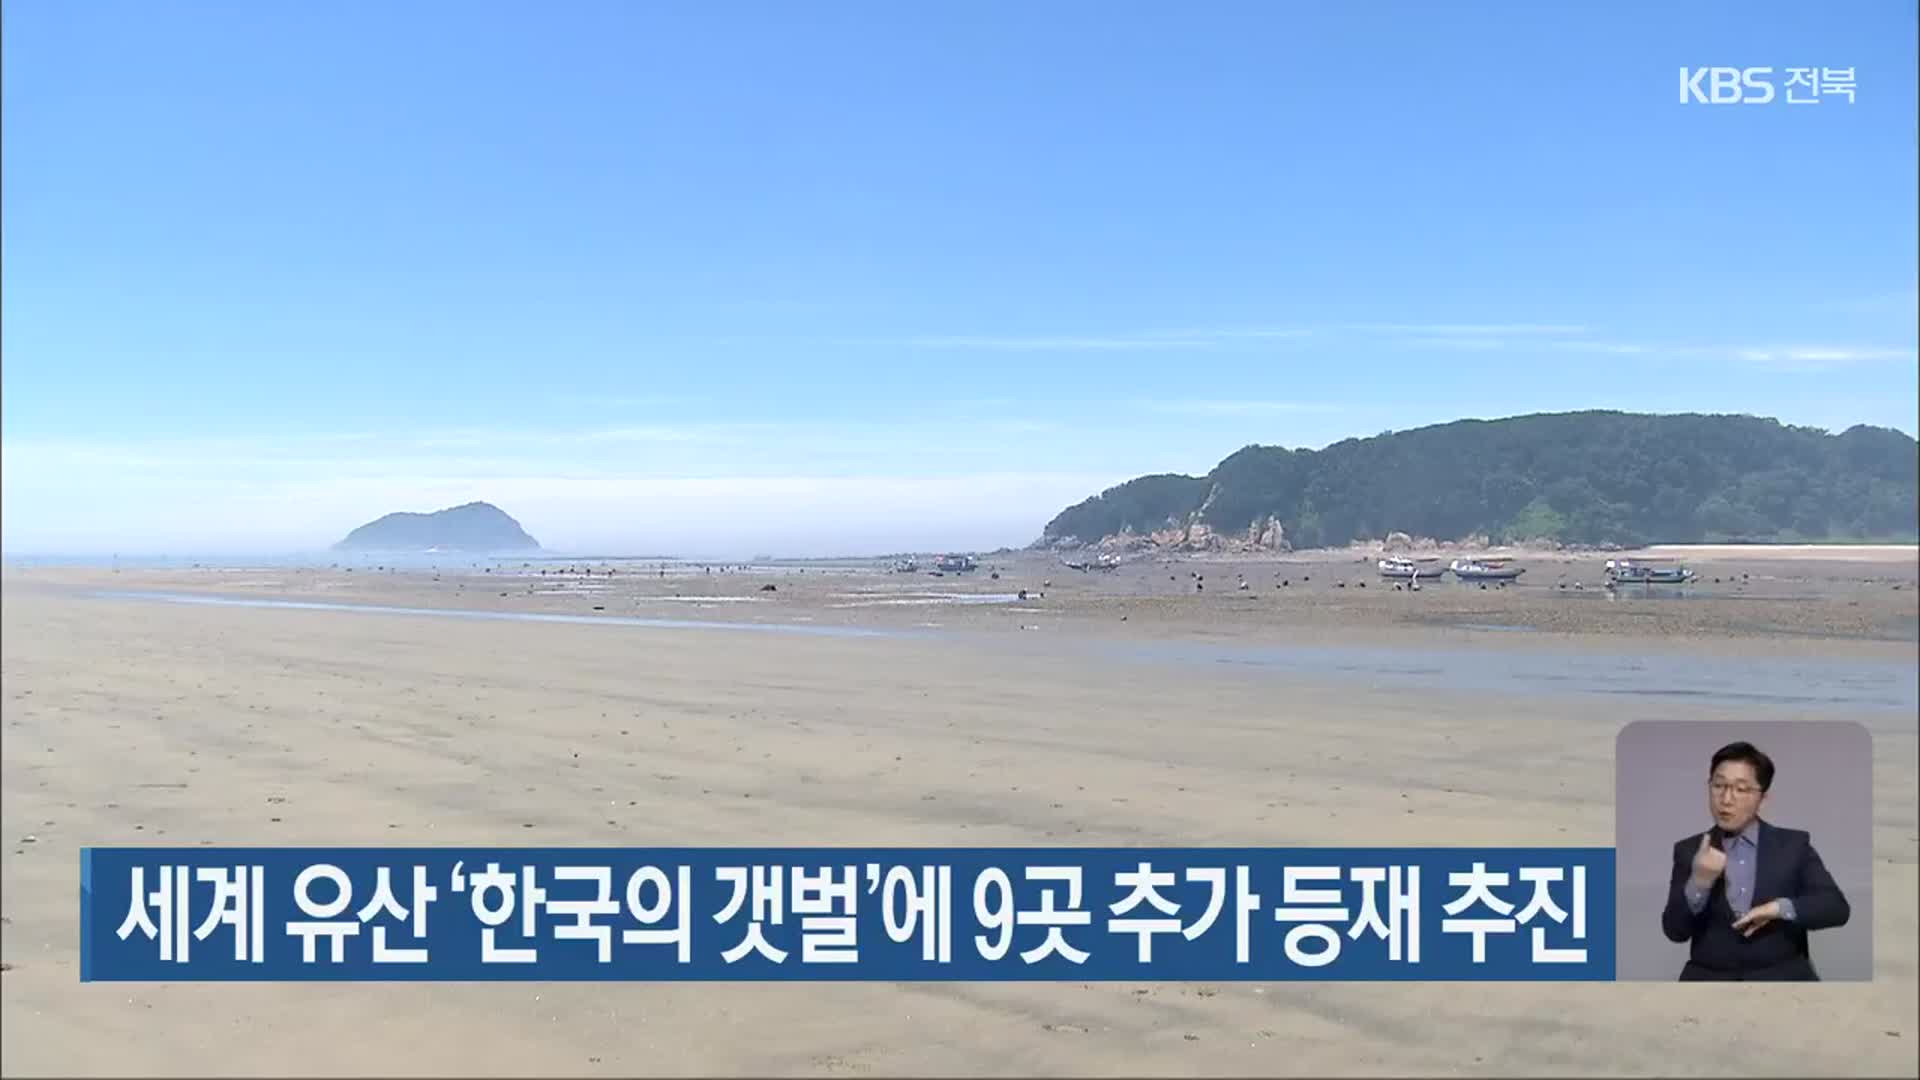 세게 유산 ‘한국의 갯벌’에 9곳 추가 등재 추진